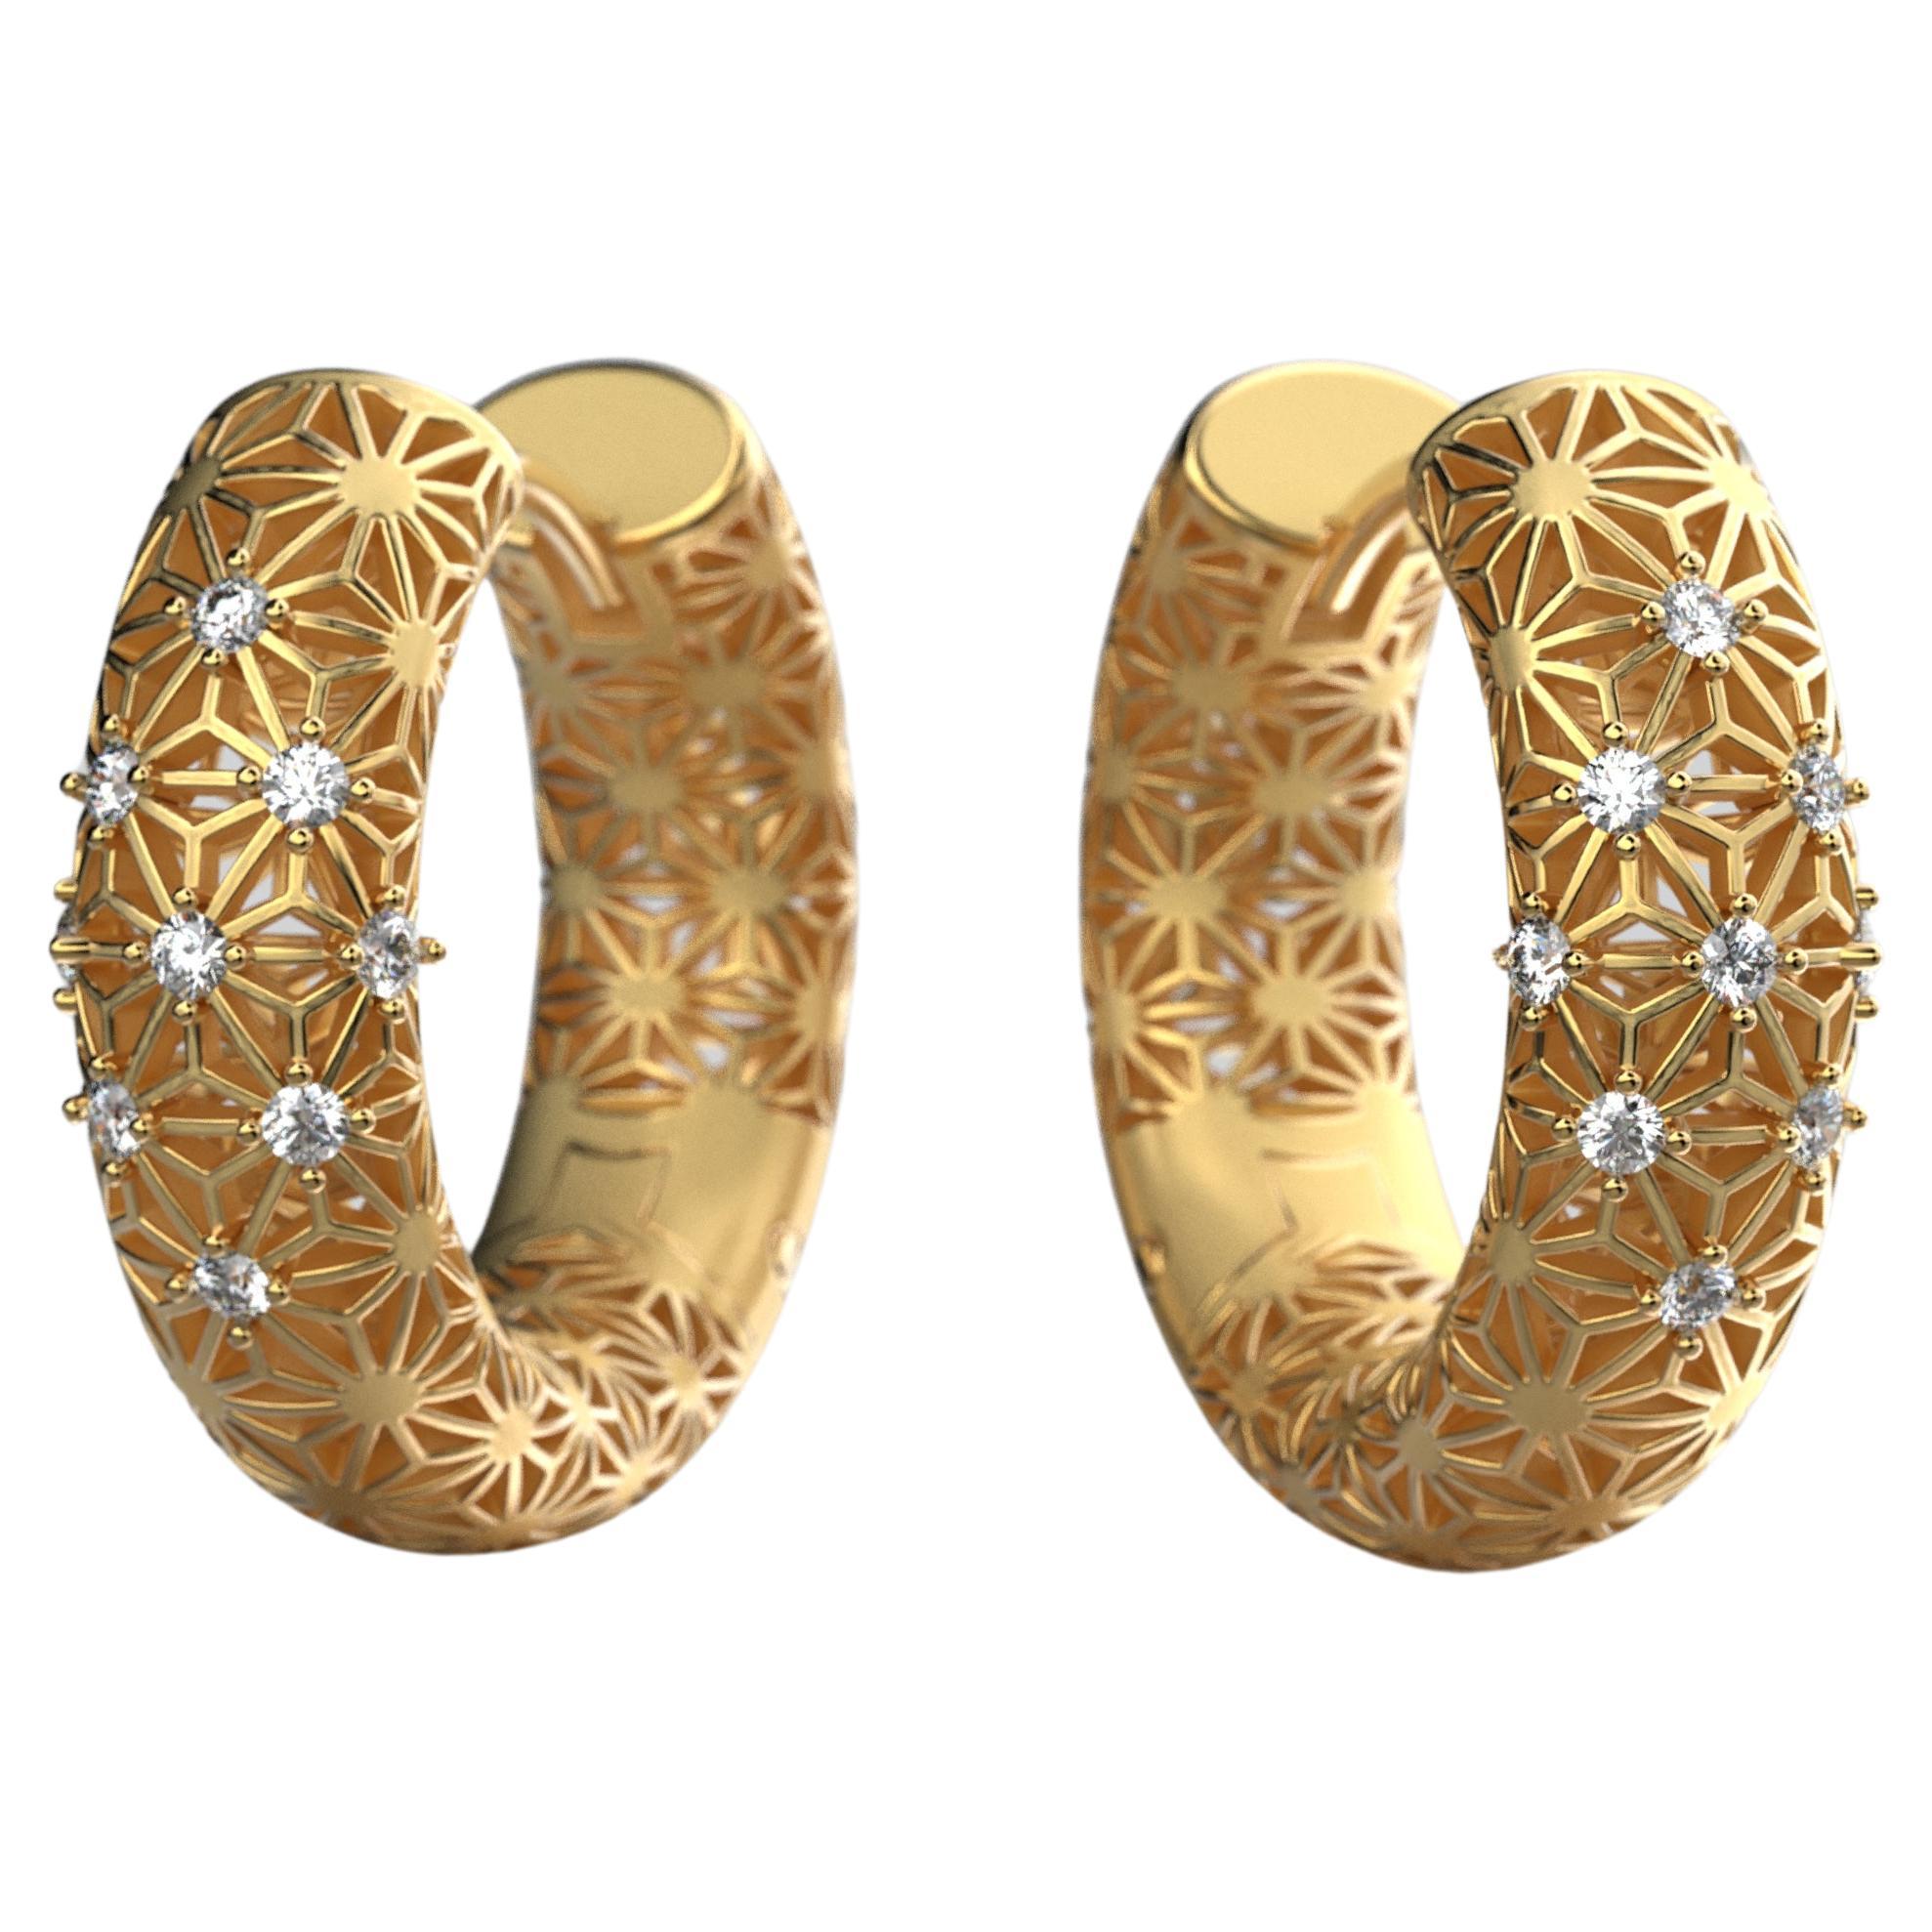 Gönnen Sie sich die zeitlose Eleganz unserer auf Bestellung gefertigten italienischen Goldohrringe, bei denen Luxus und Tradition in jedem schimmernden Detail aufeinandertreffen. Diese exquisiten Reifchen werden in Italien in sorgfältiger Handarbeit